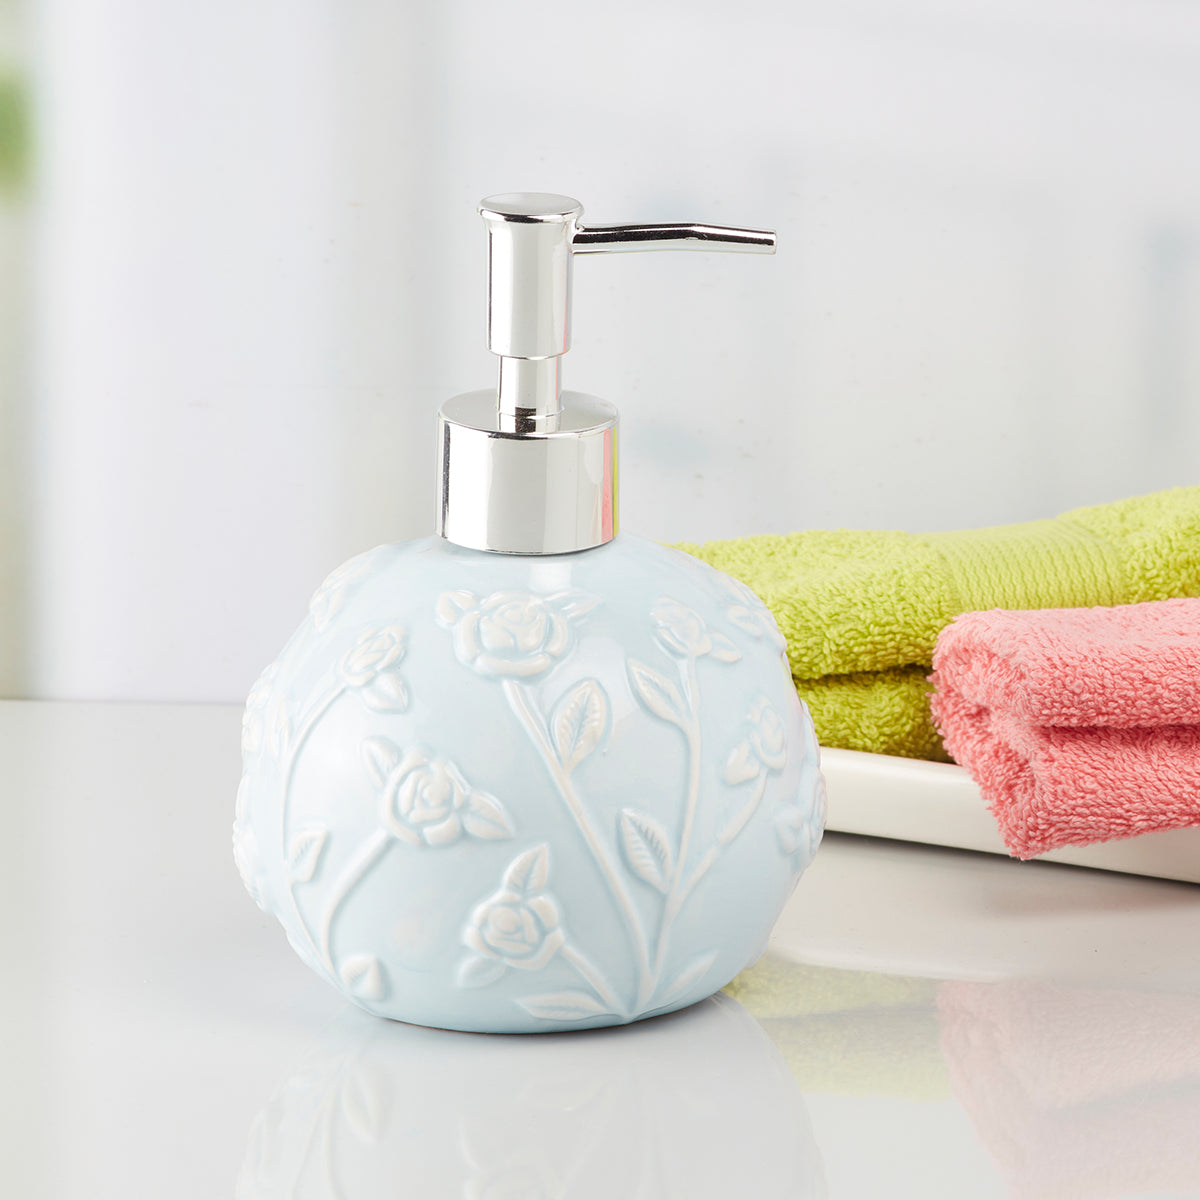 Kookee Ceramic Soap Dispenser for Bathroom handwash, refillable pump bottle for Kitchen hand wash basin, Set of 1, Blue (8016)